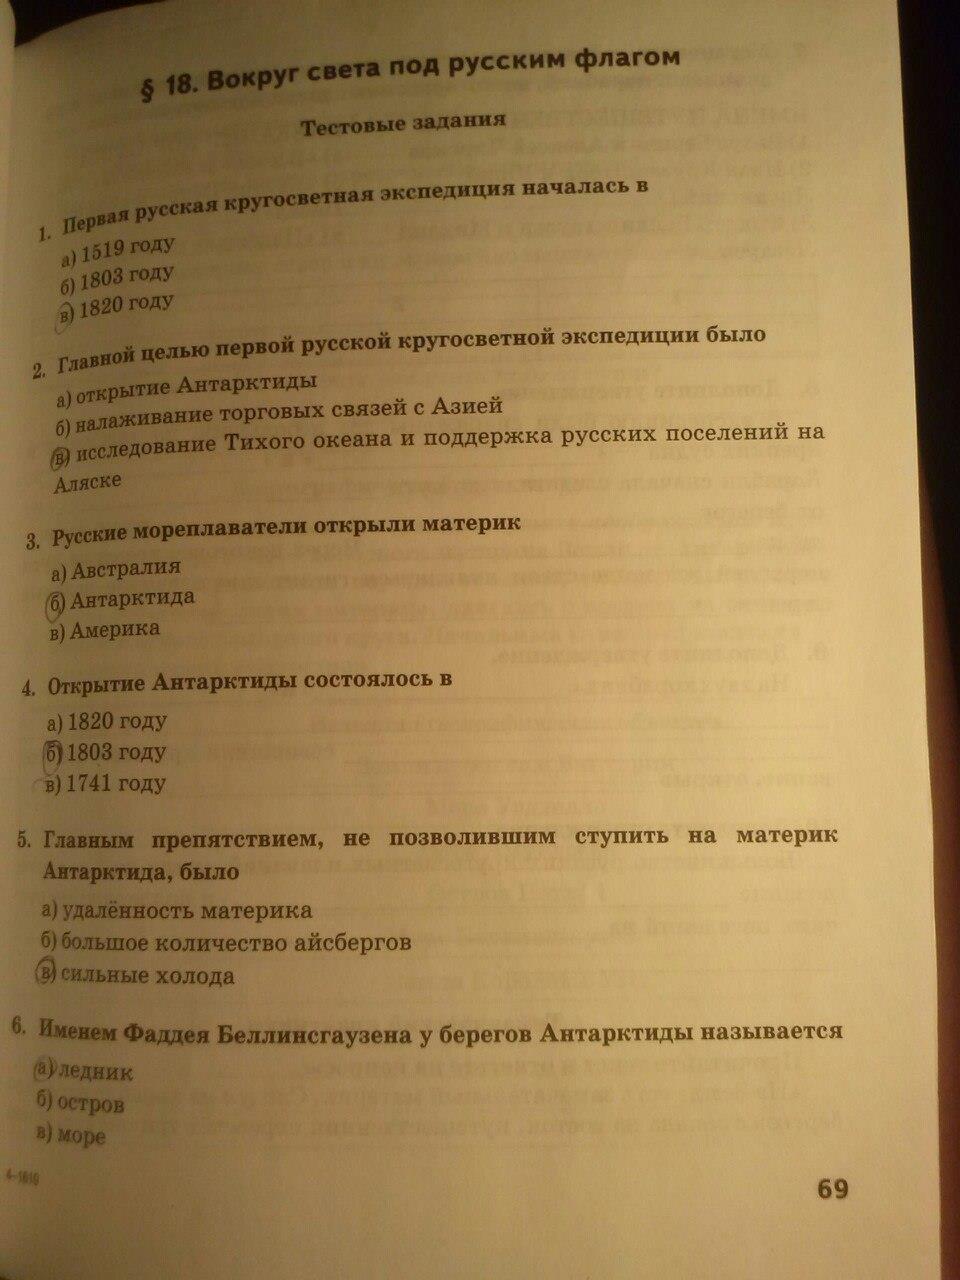 гдз 5 класс тетрадь-практикум страница 69 география Молодцов